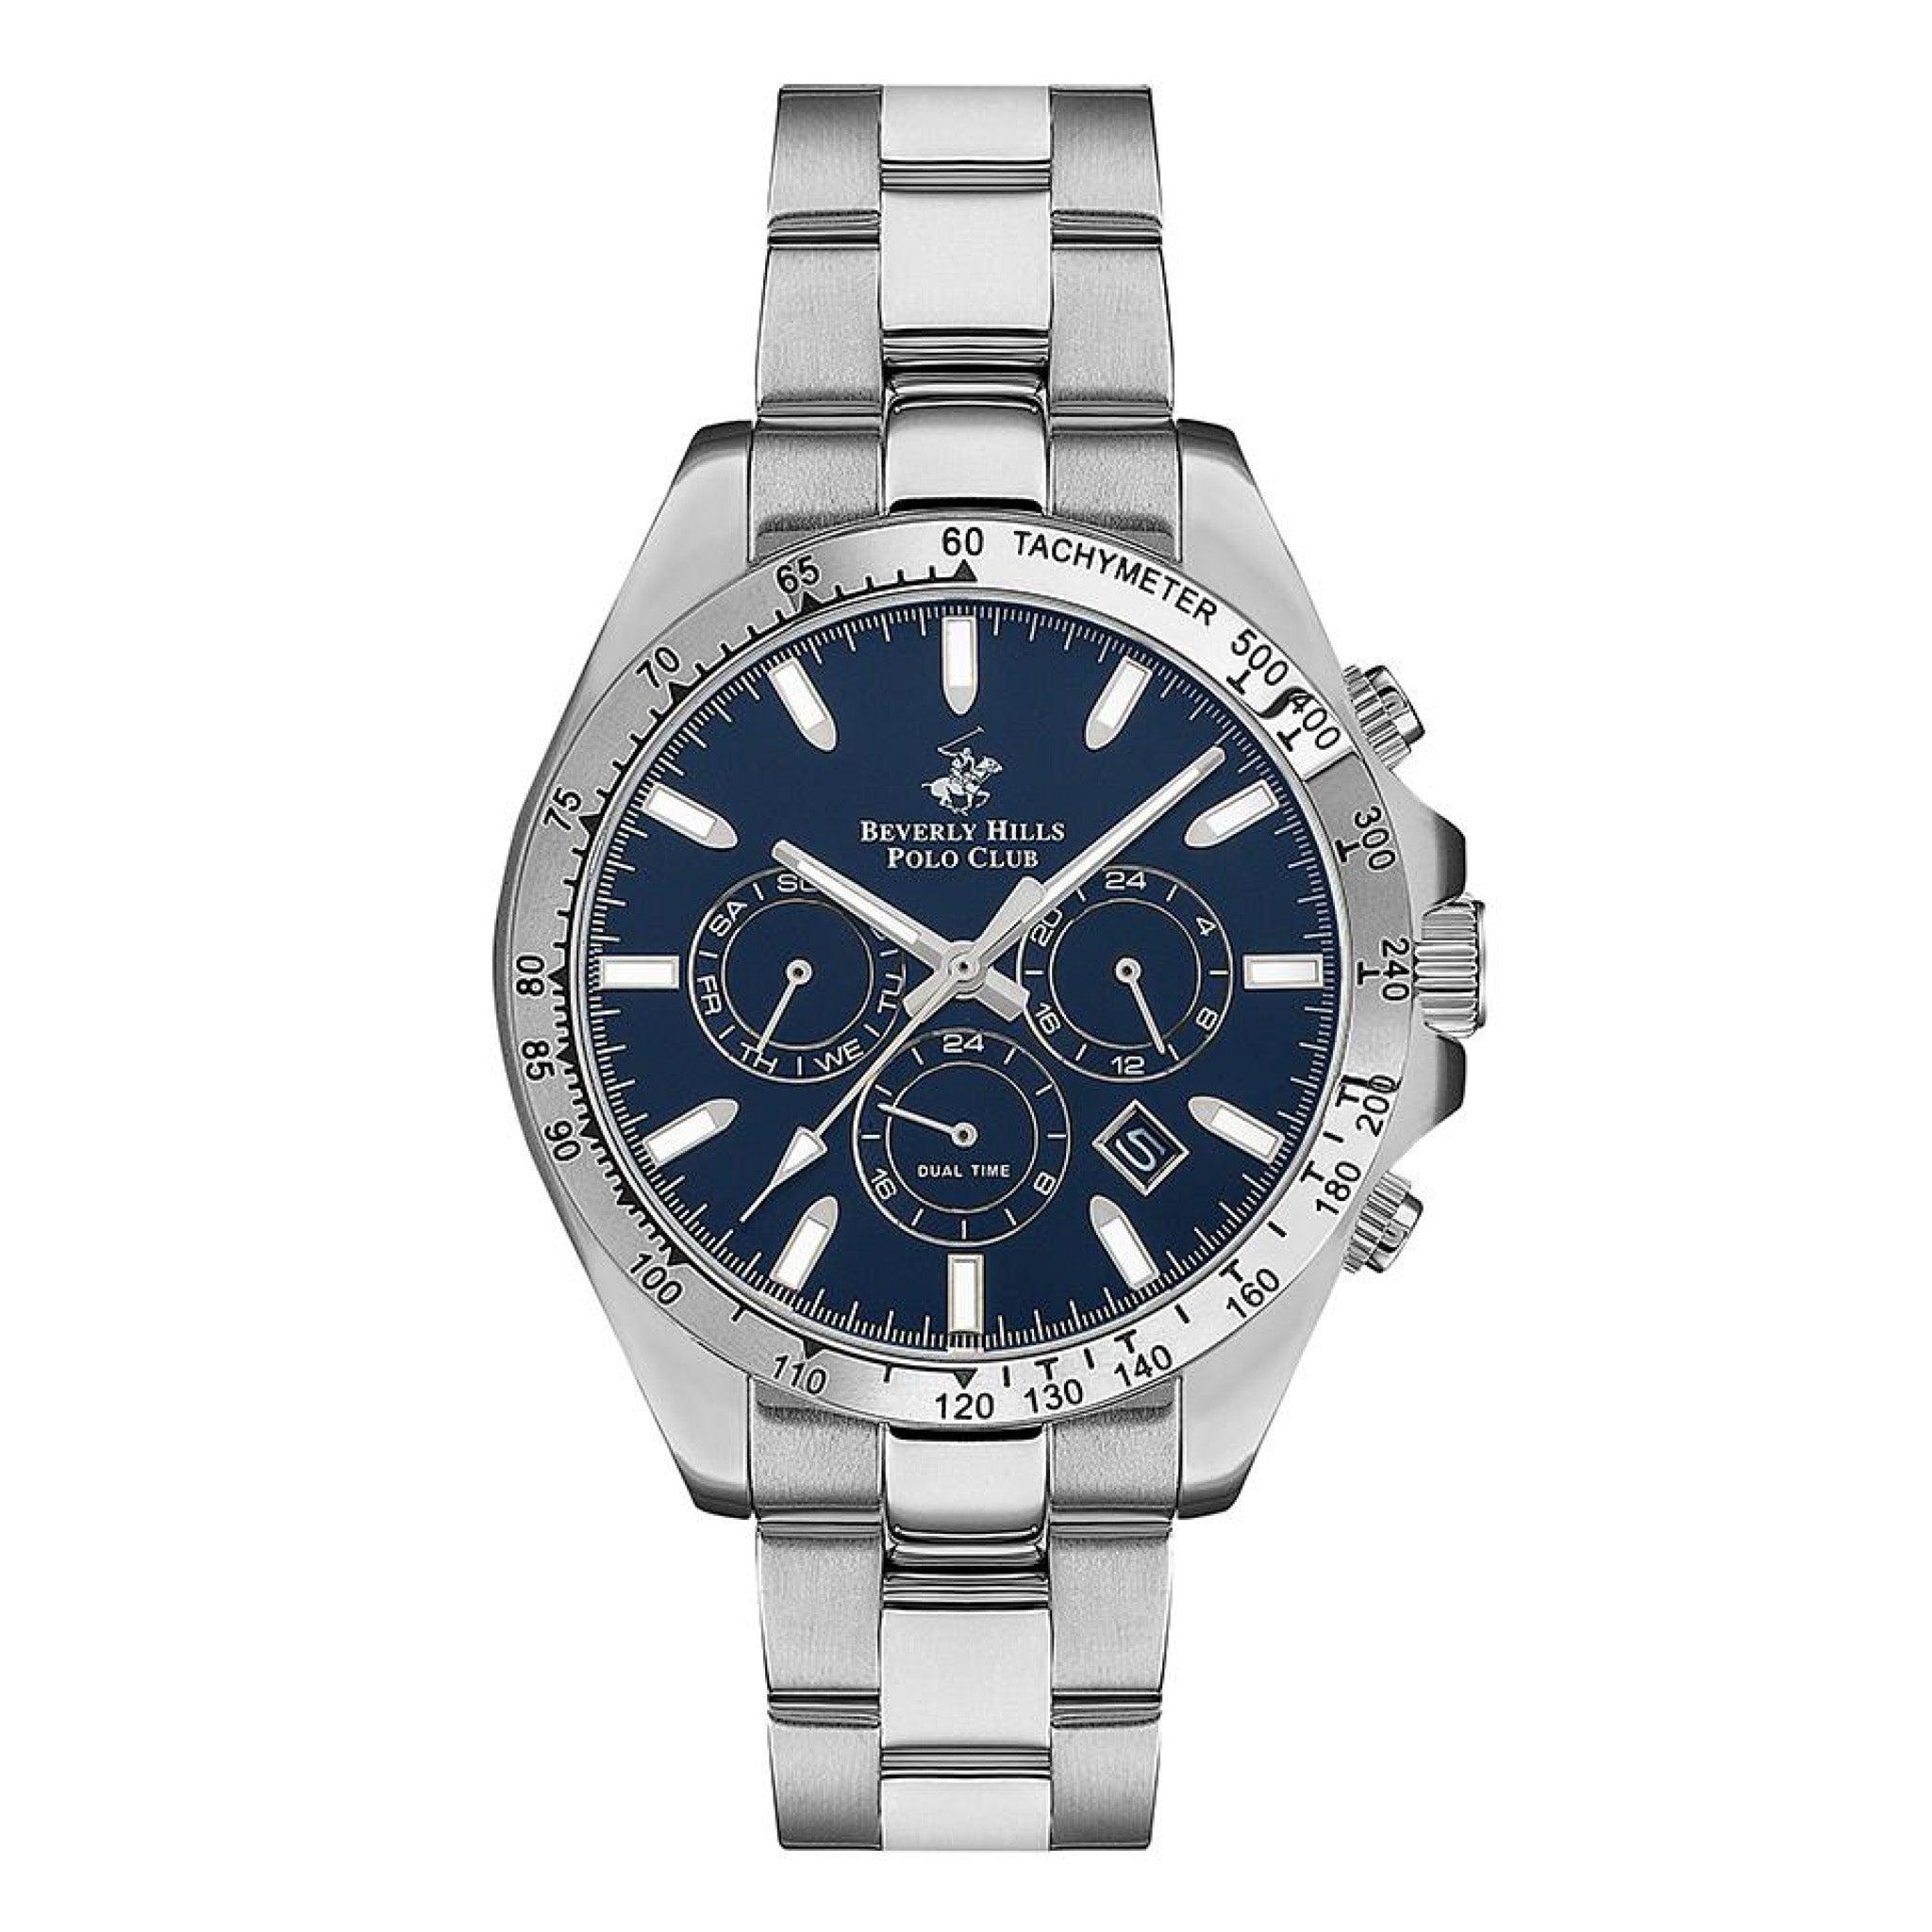 ساعة بيفرلي هيلز بولو كلوب للرجال متعددة الوظائف بمينا ازرق داكن Beverly Hills Polo Club Men's Multi Function Dark Blue Dial Watch - Bp3127x.390